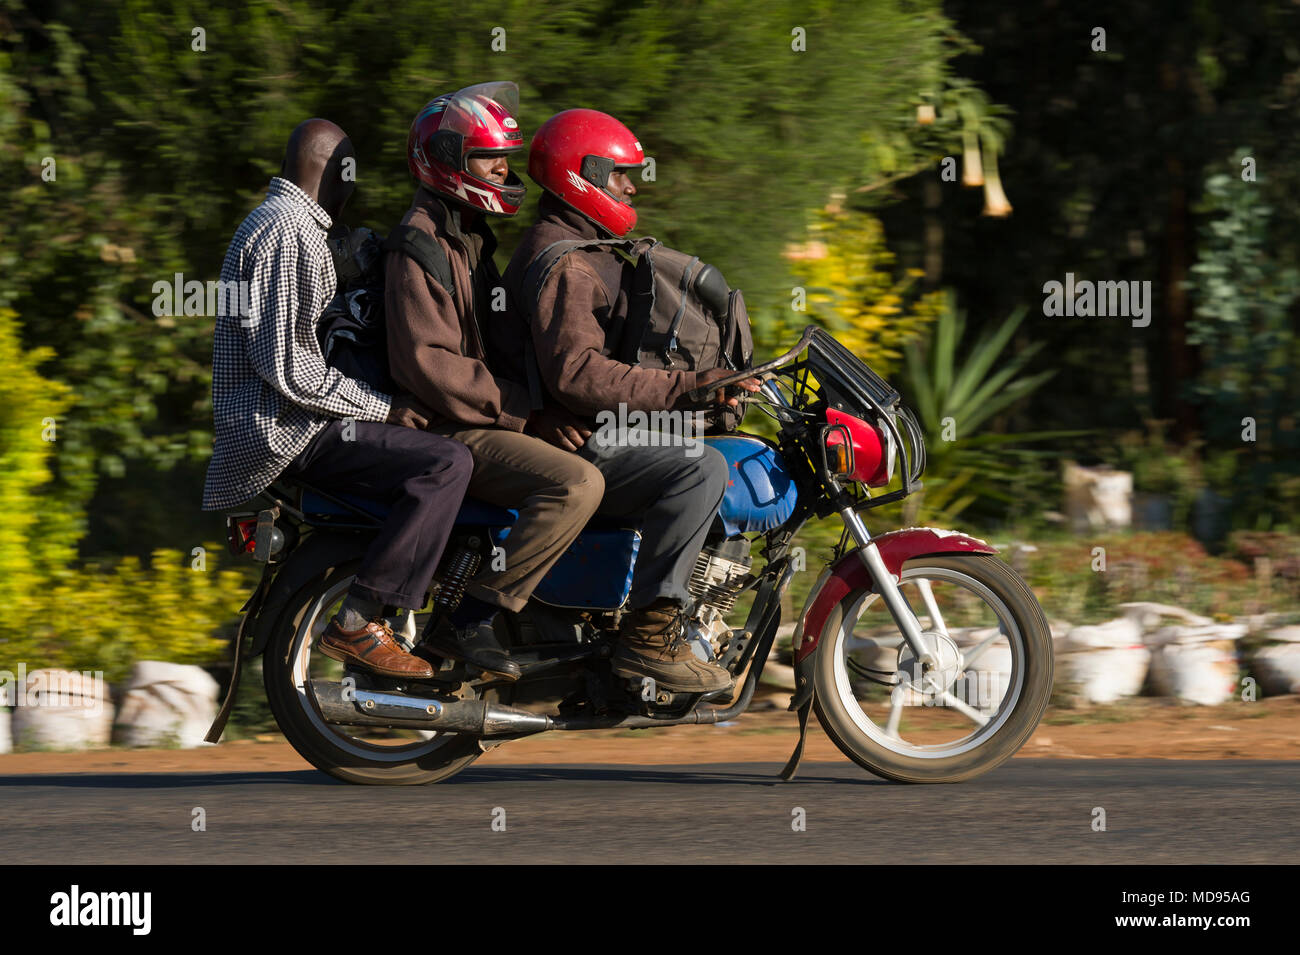 Un taxi moto, savoir qu'un, boda boda en Afrique de l'Est sont utilisés  pour le transport des personnes et des biens. A boda boda ont de très  mauvais résultats en matière de